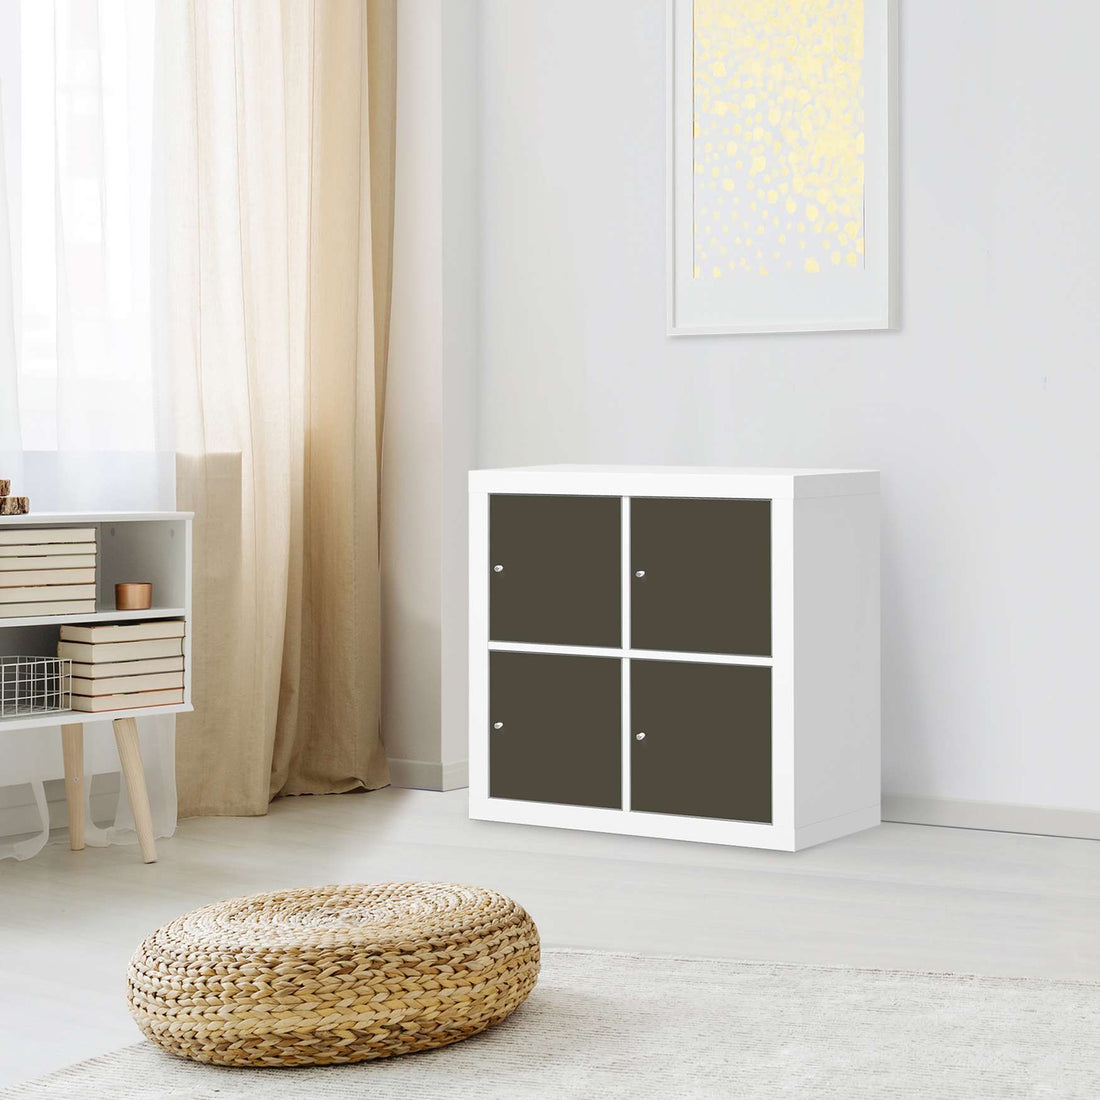 Klebefolie für Möbel Braungrau Dark - IKEA Kallax Regal 4 Türen - Wohnzimmer